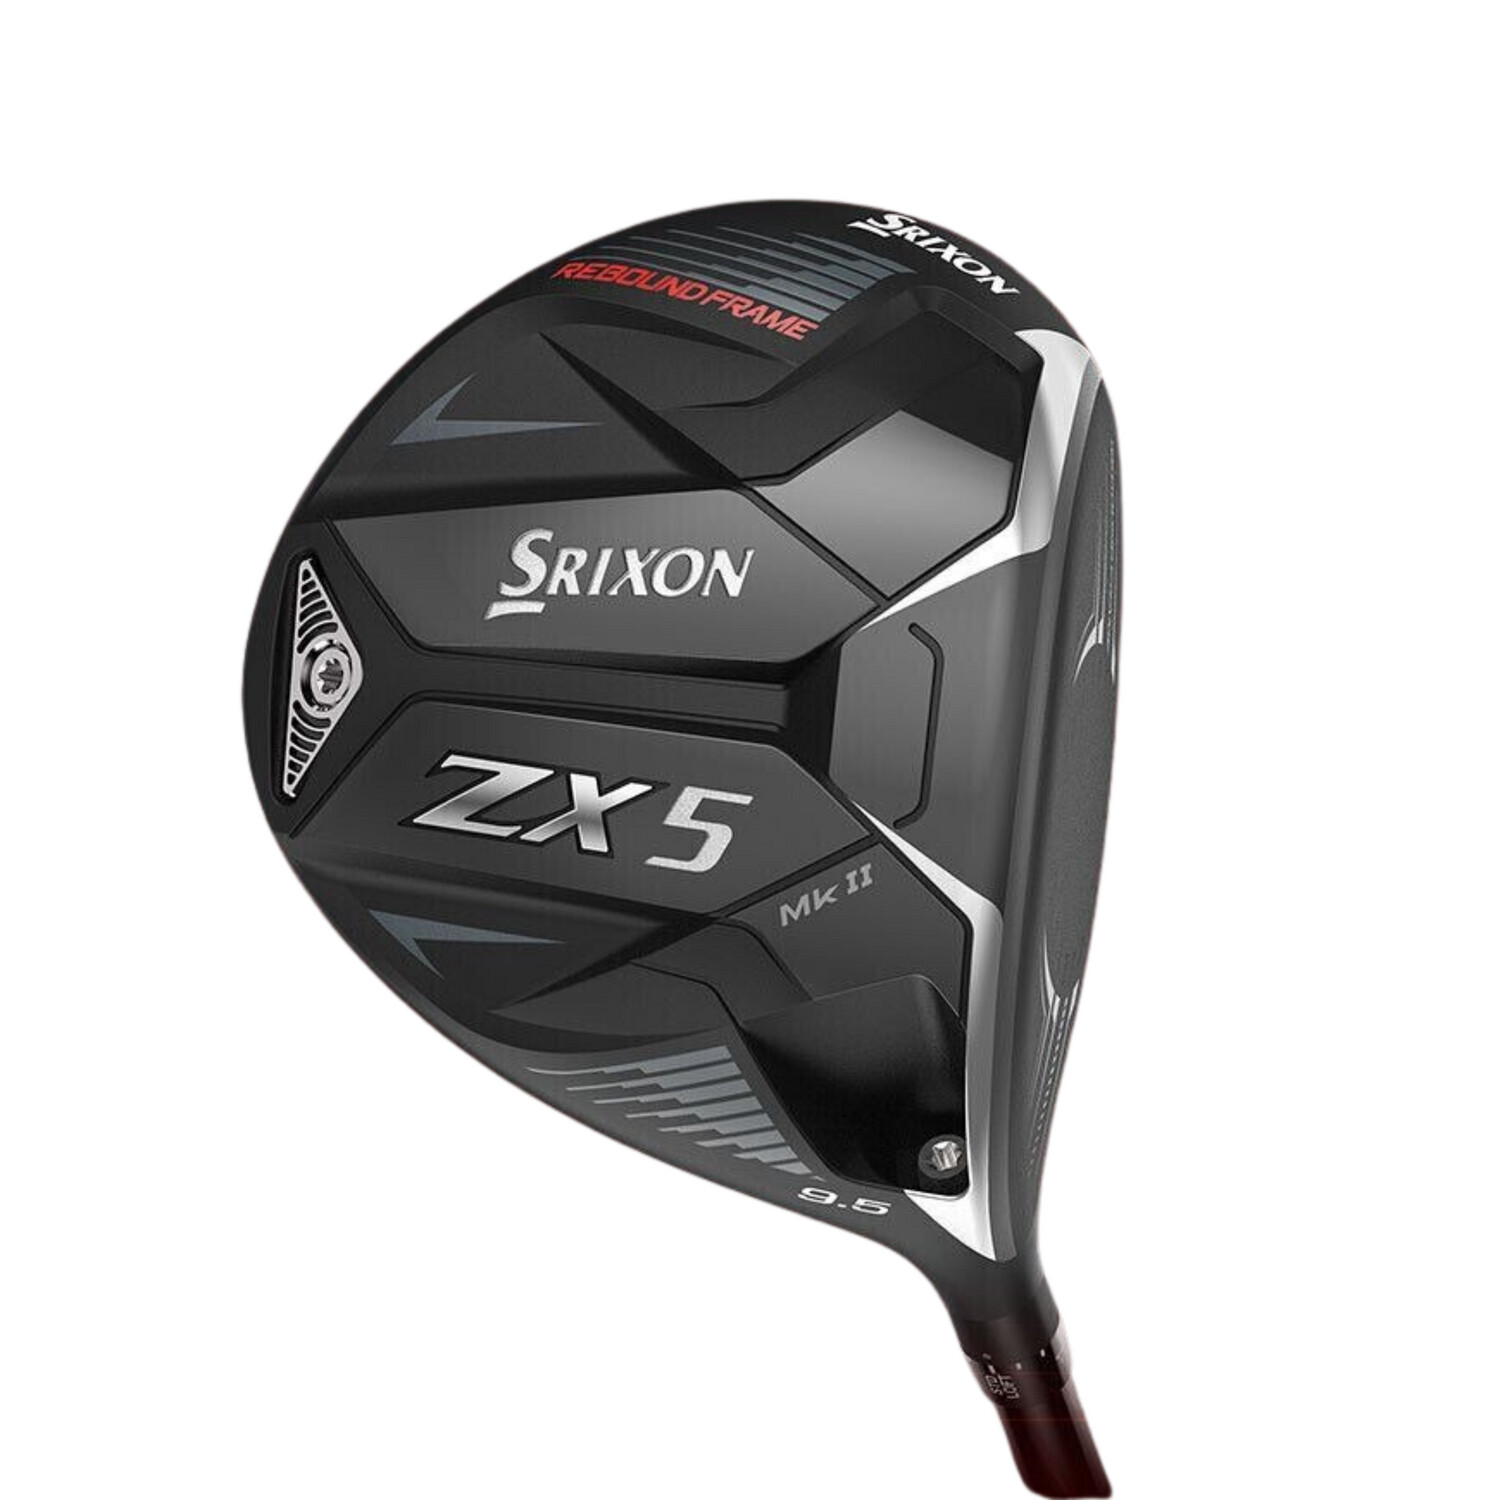 Srixon ZX5 Mk II Golf Driver, Shaft Options: PROJECT X HZRDUS GEN 4 BLACKOUT 60 Stiff, Grip Options: COBRA LAMKIN MICROLITE REL BLACK 360 58R